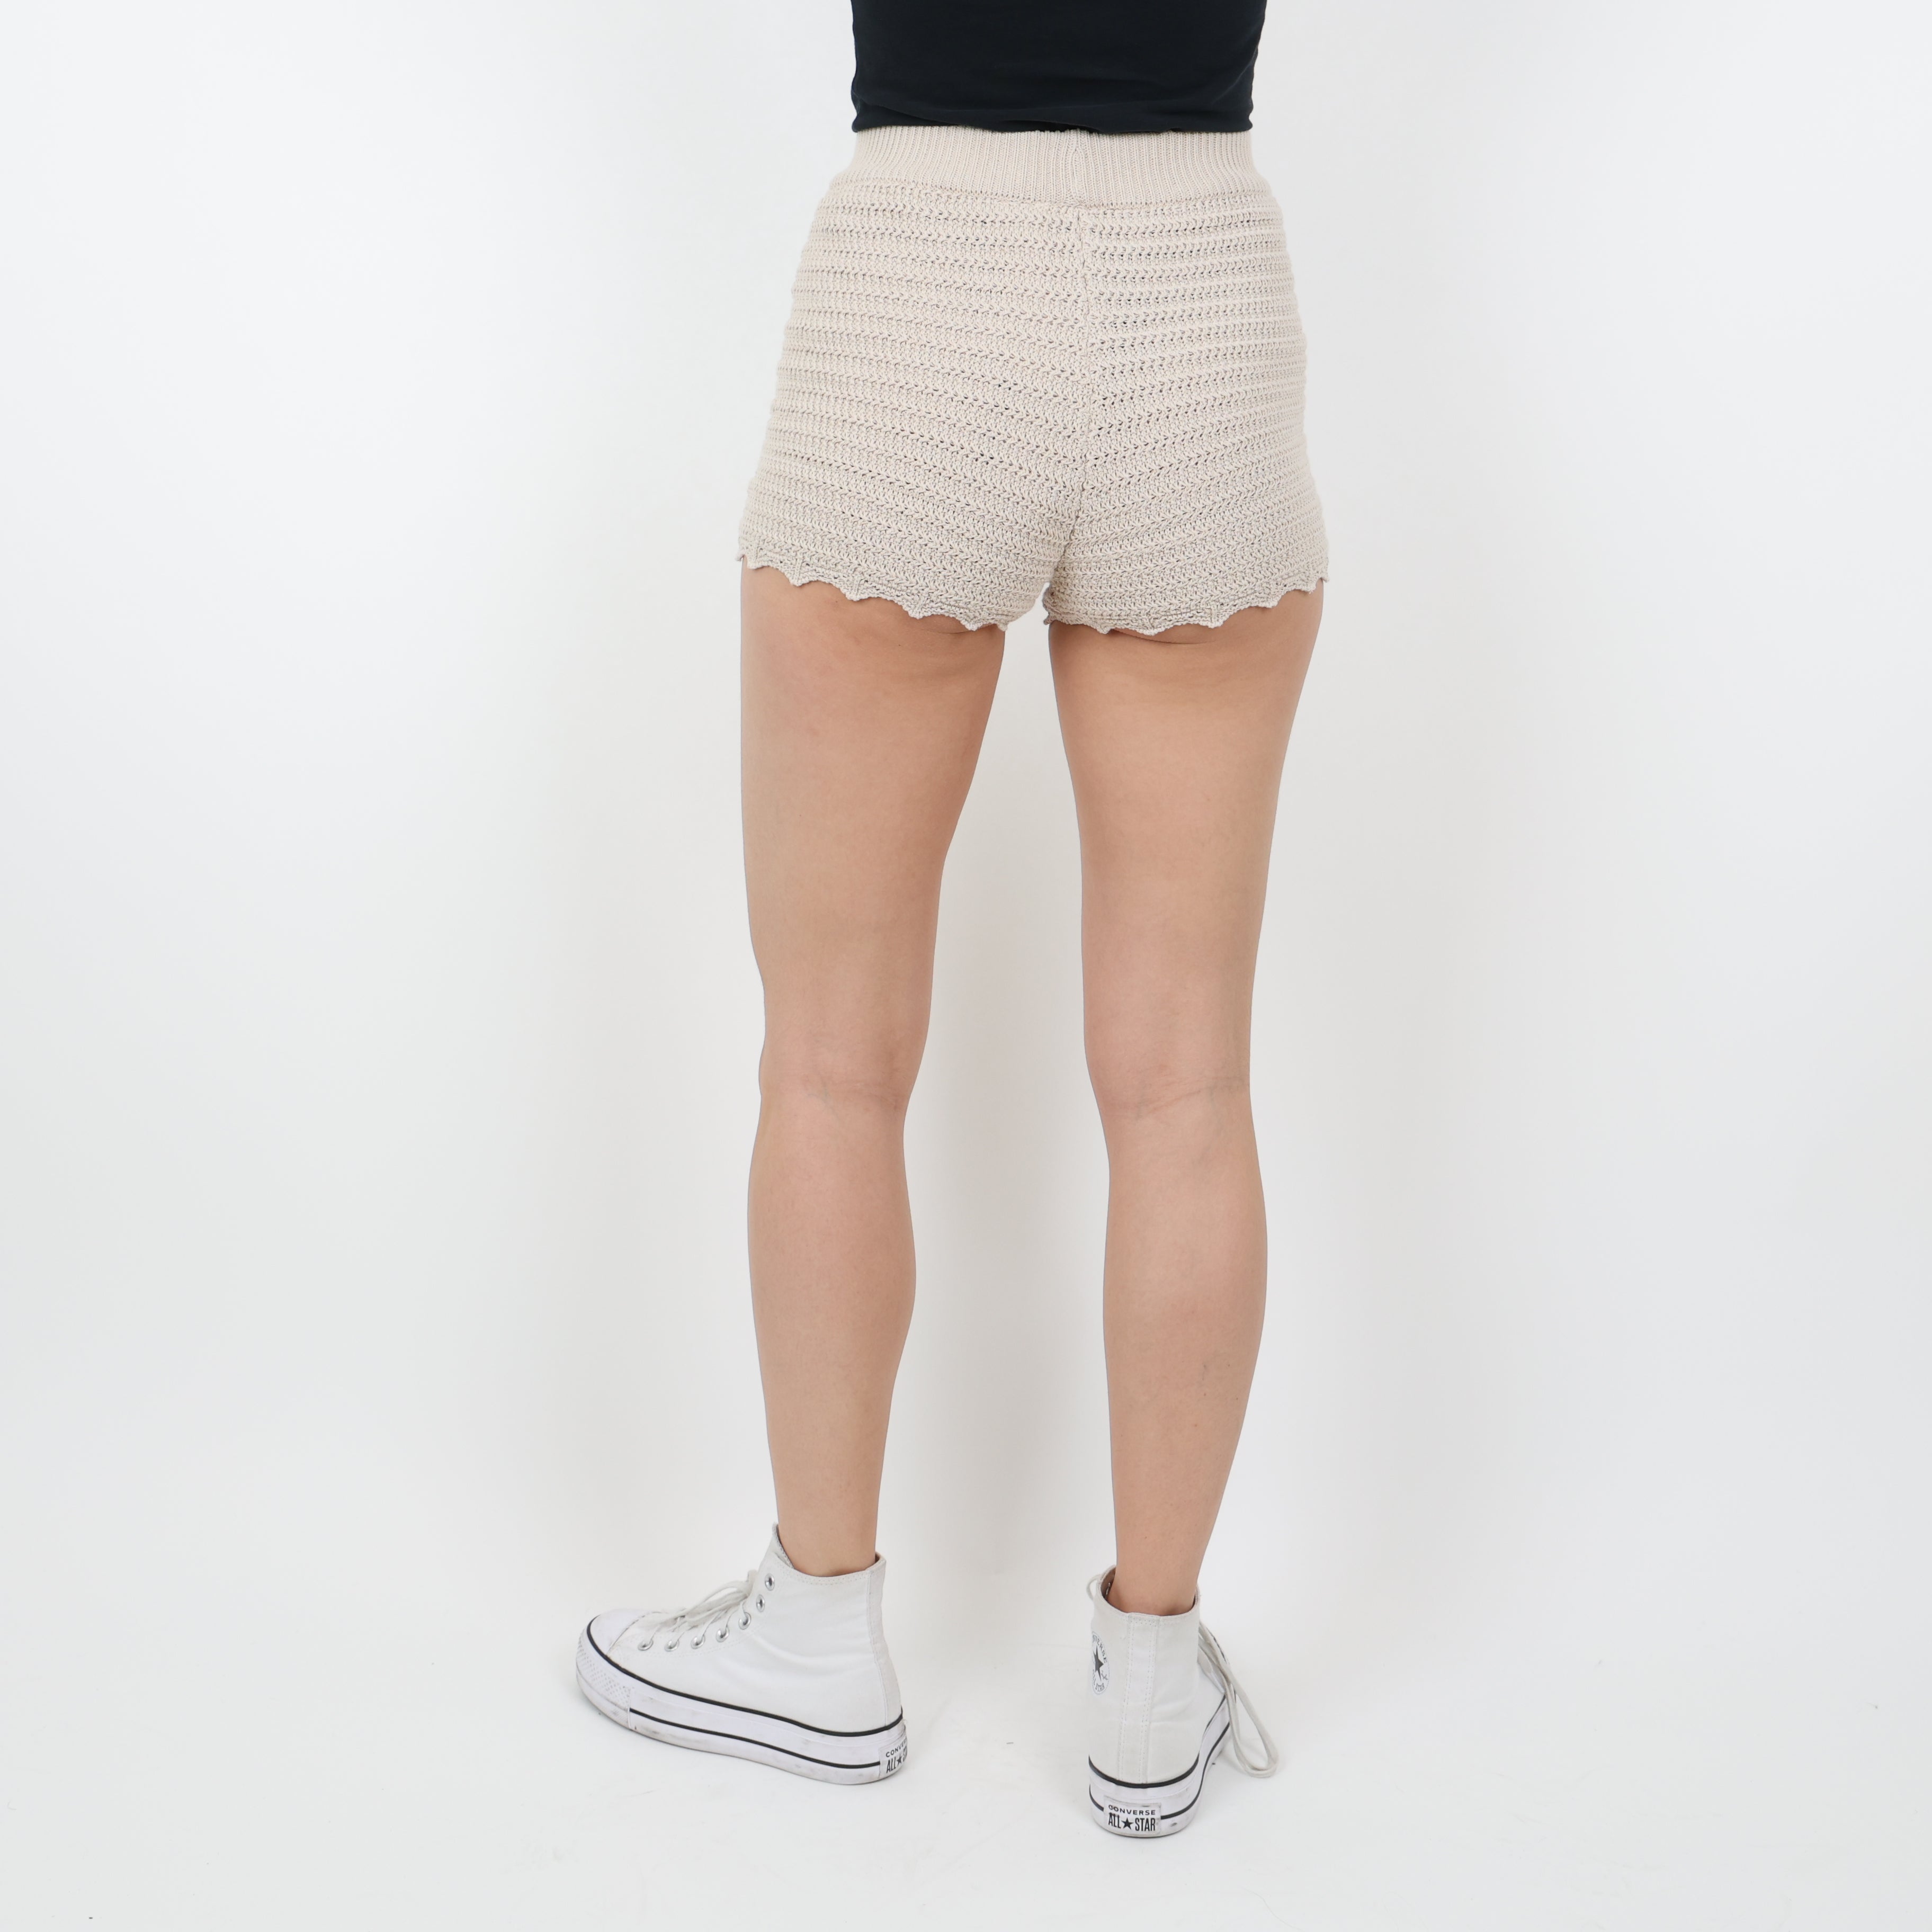 Shorts, UK Size 6